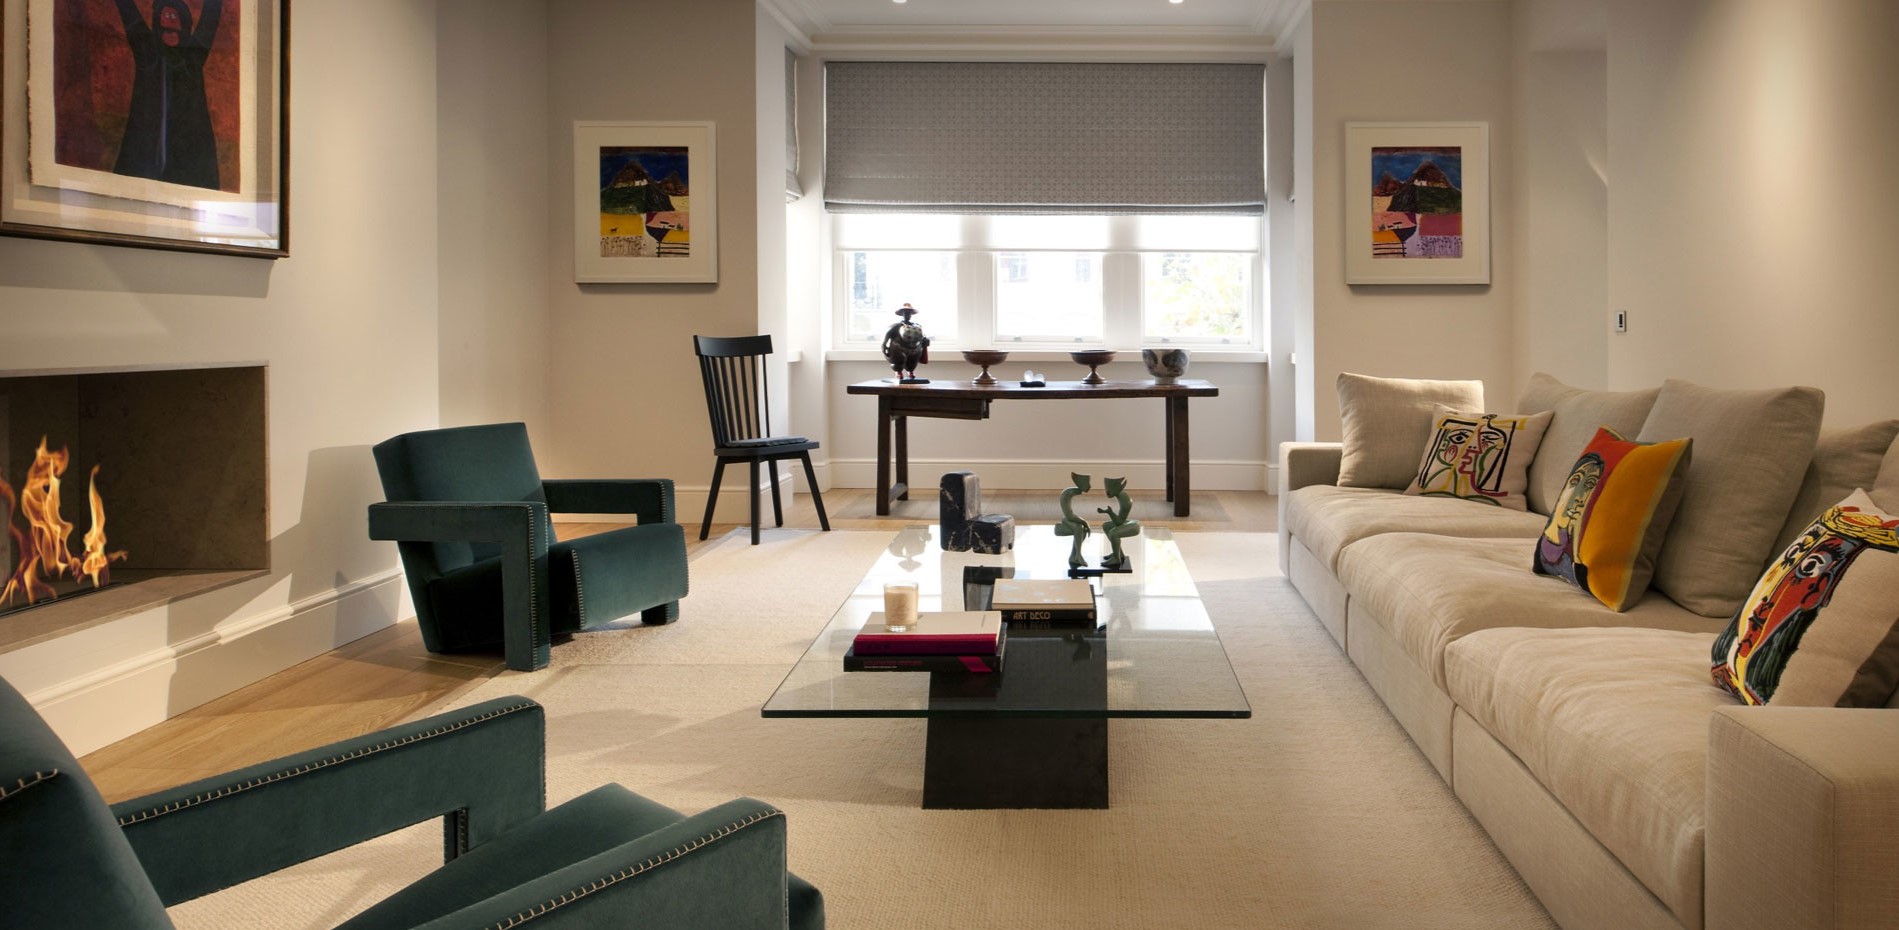 Светлый ковер на полу прекрасно сочетается с диваном в интерьере гостиной